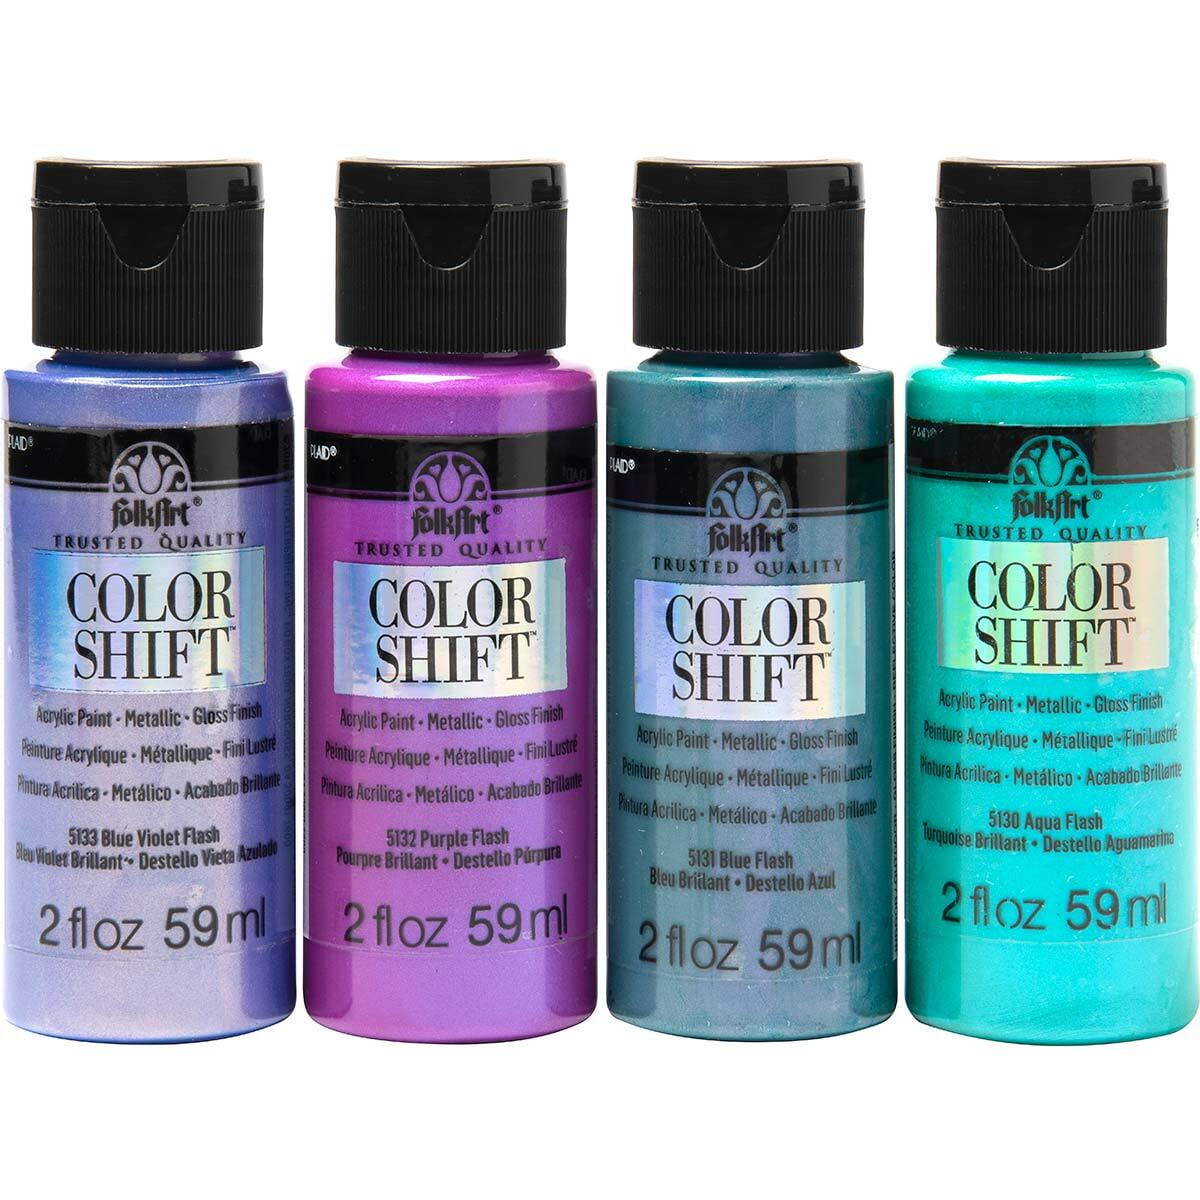 Shop Plaid FolkArt ® Color Shift™ Acrylic Paint - Pastel Purple, 2 oz. -  12009 - 12009